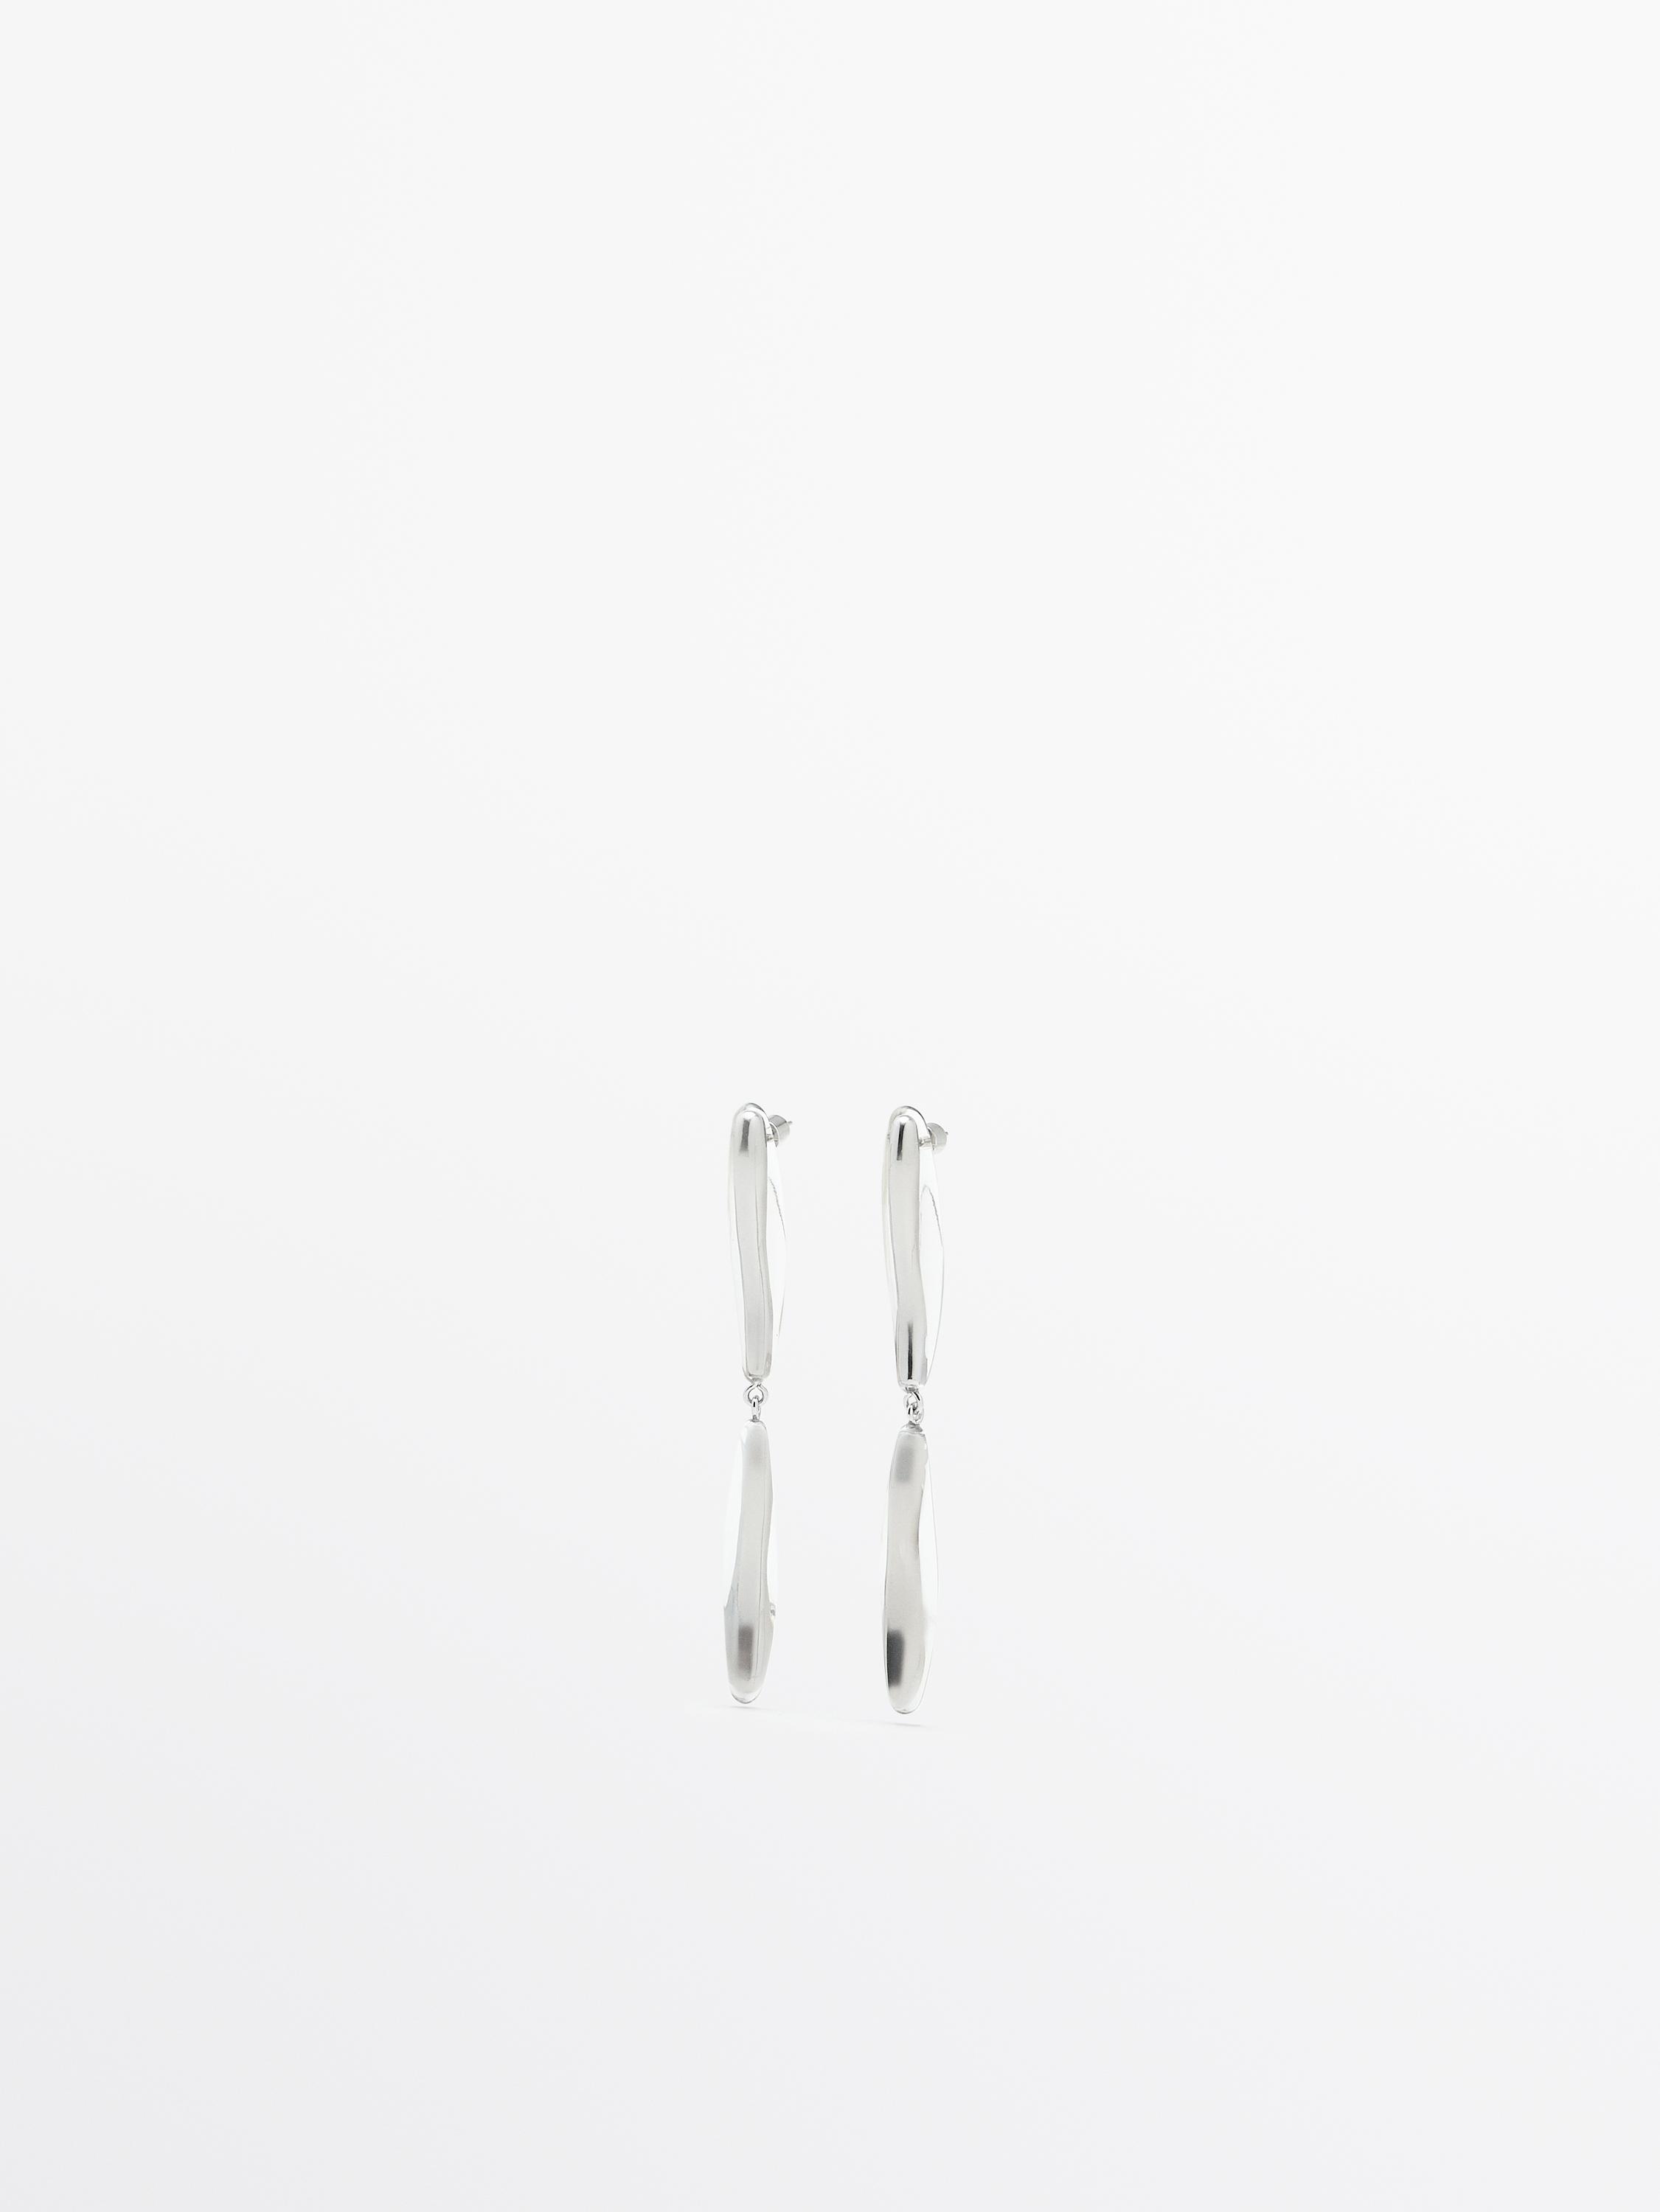 Teardrop dangle earrings - Limited Edition